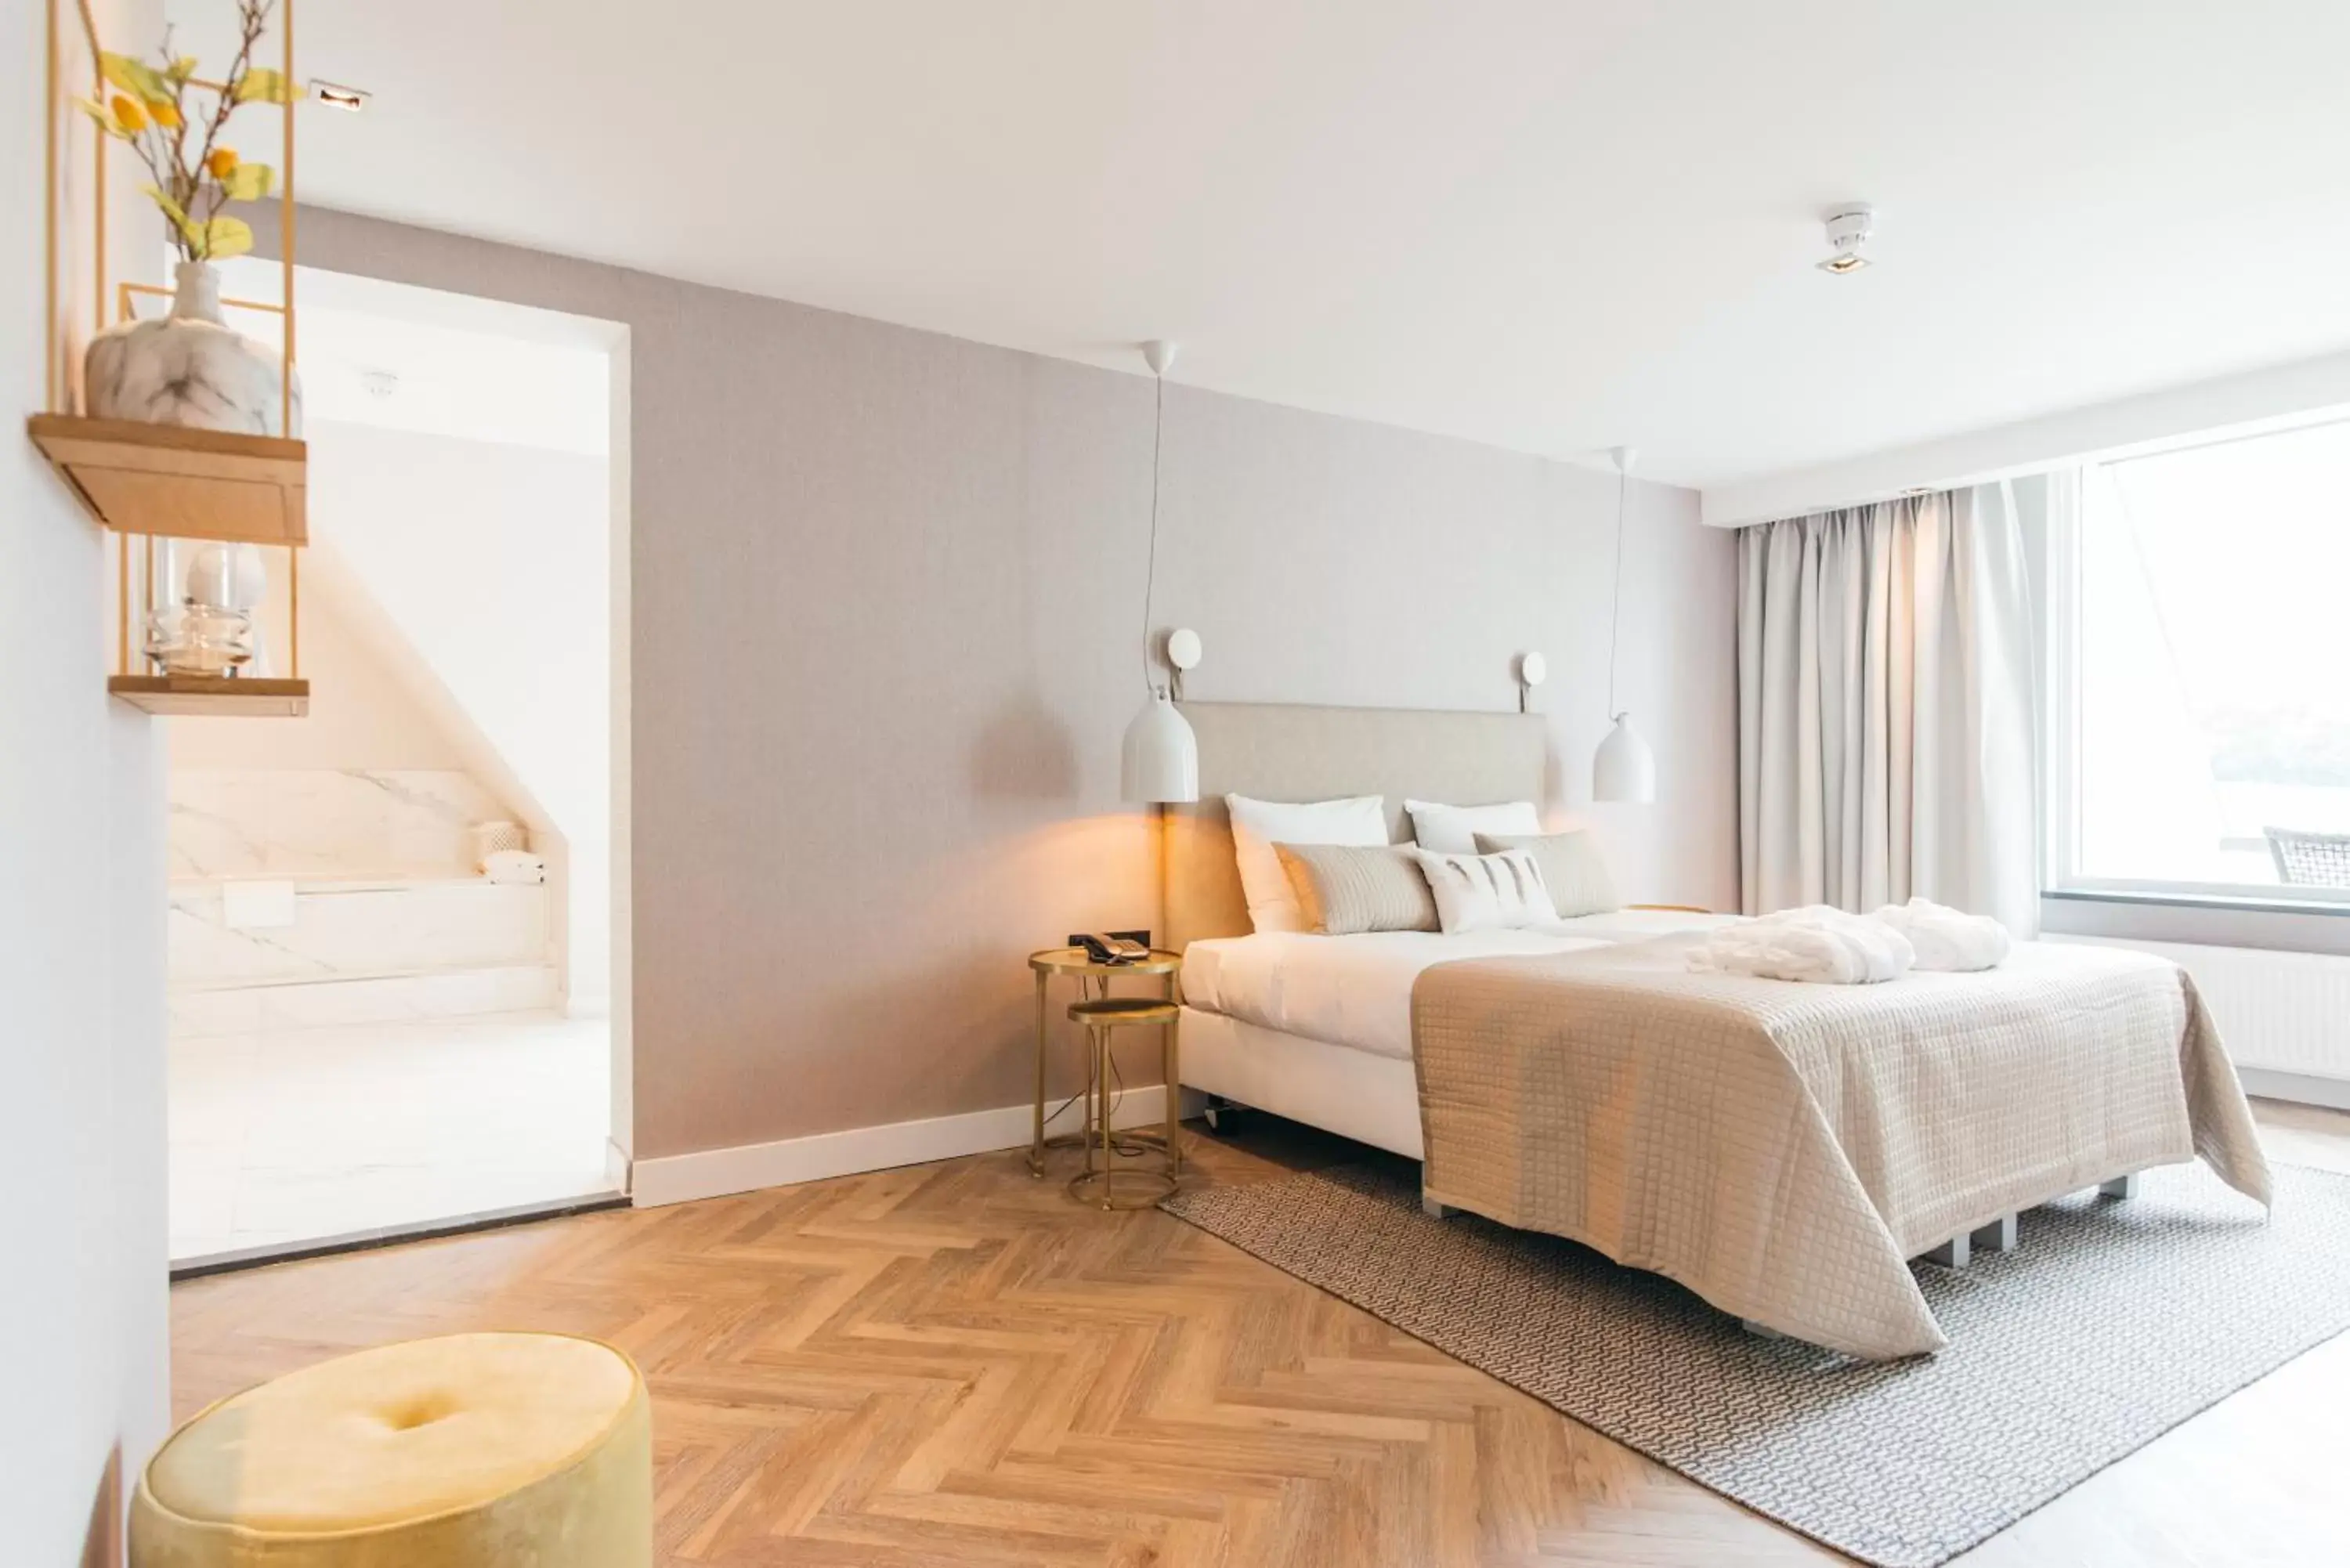 Photo of the whole room, Bed in Van der Valk Hotel Apeldoorn - de Cantharel